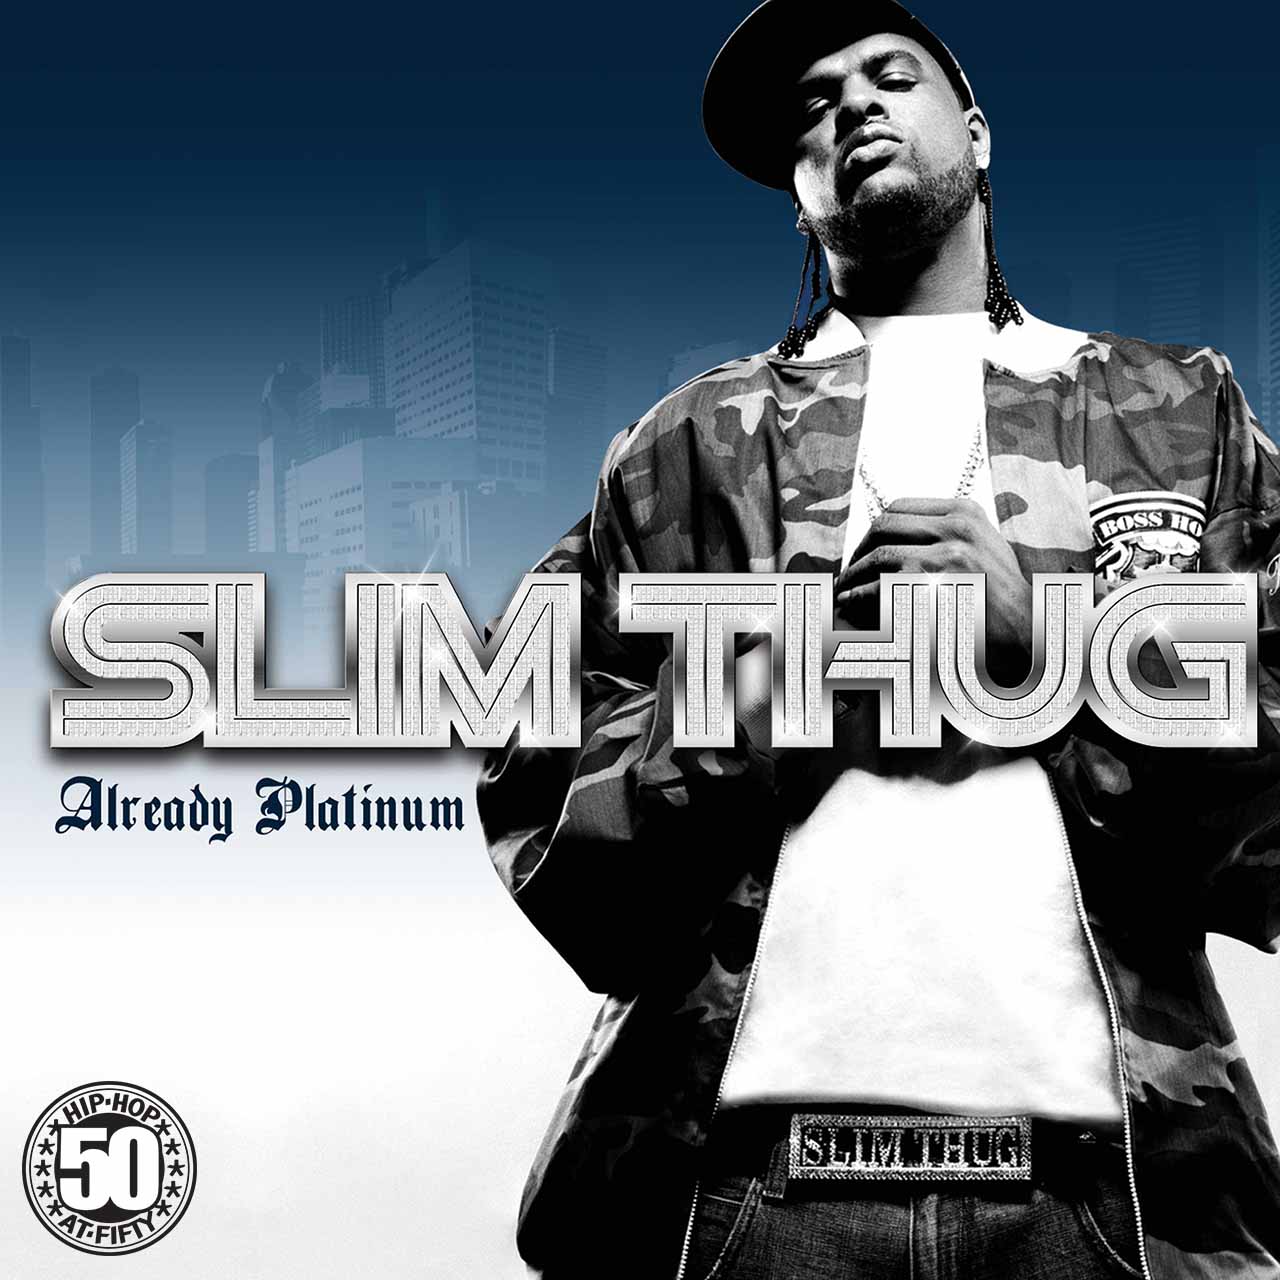 Already Platinum': Slim Thug's Classic Neptunes Team-Up